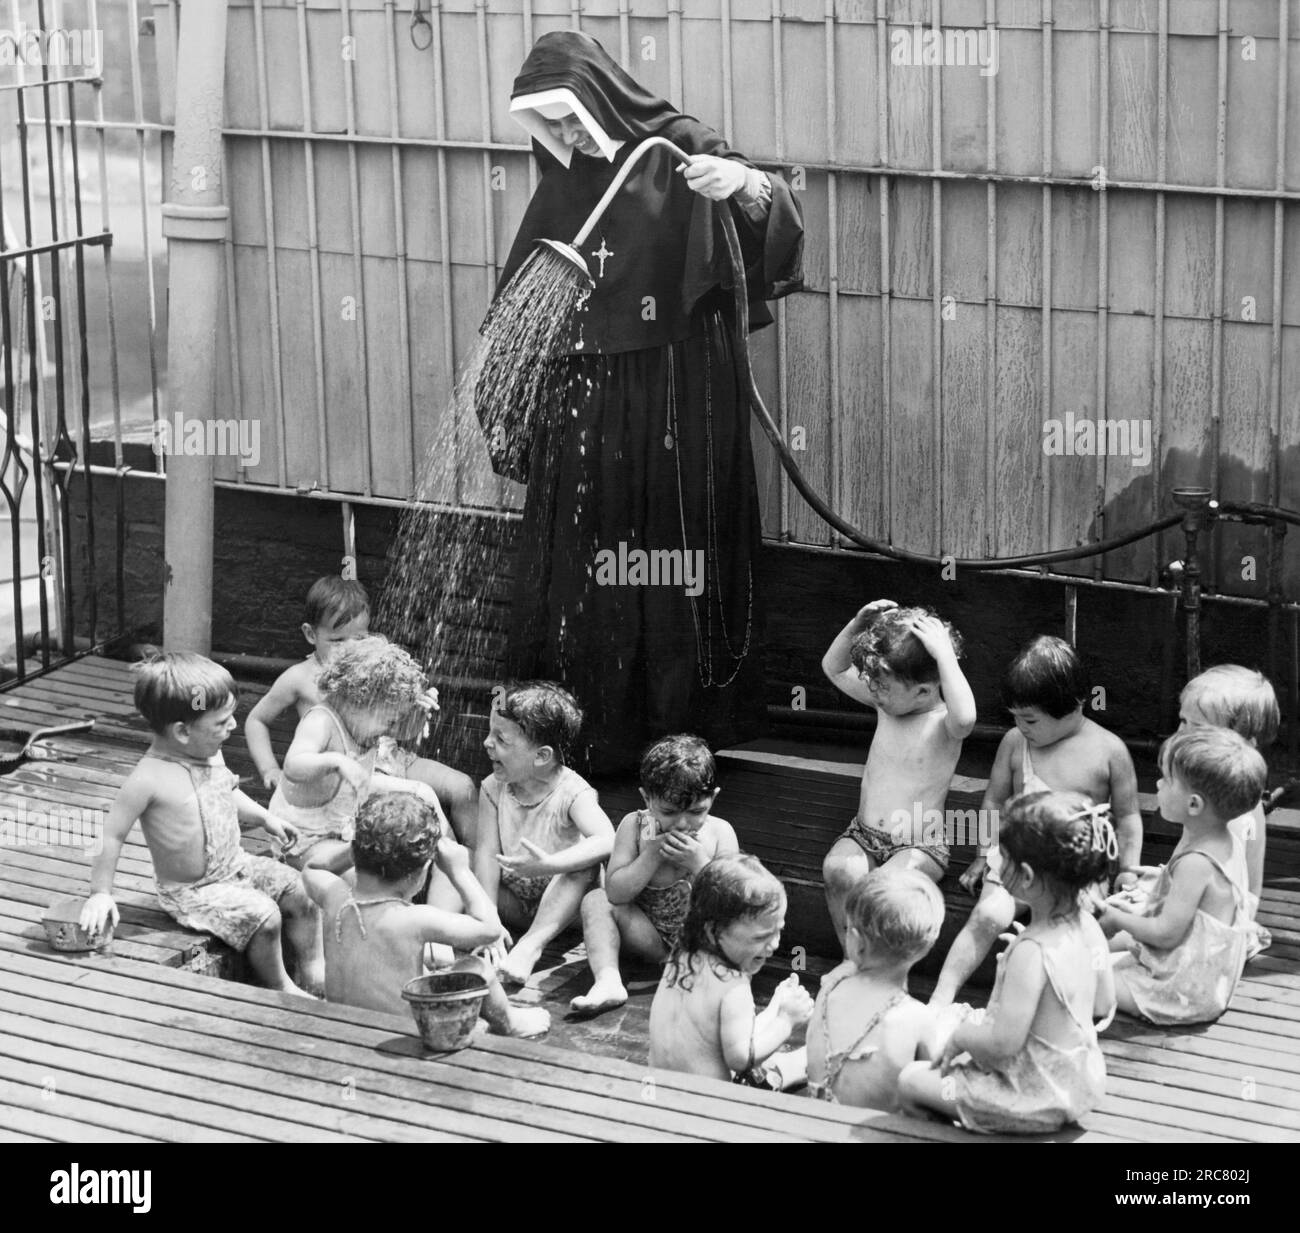 New York, New York : 1 juillet 1941 c'est une journée chaude à New York et une sœur se rafraîchit quelques-uns de ses jeunes enfants de garderie à la Madonna House Day nursery. Banque D'Images